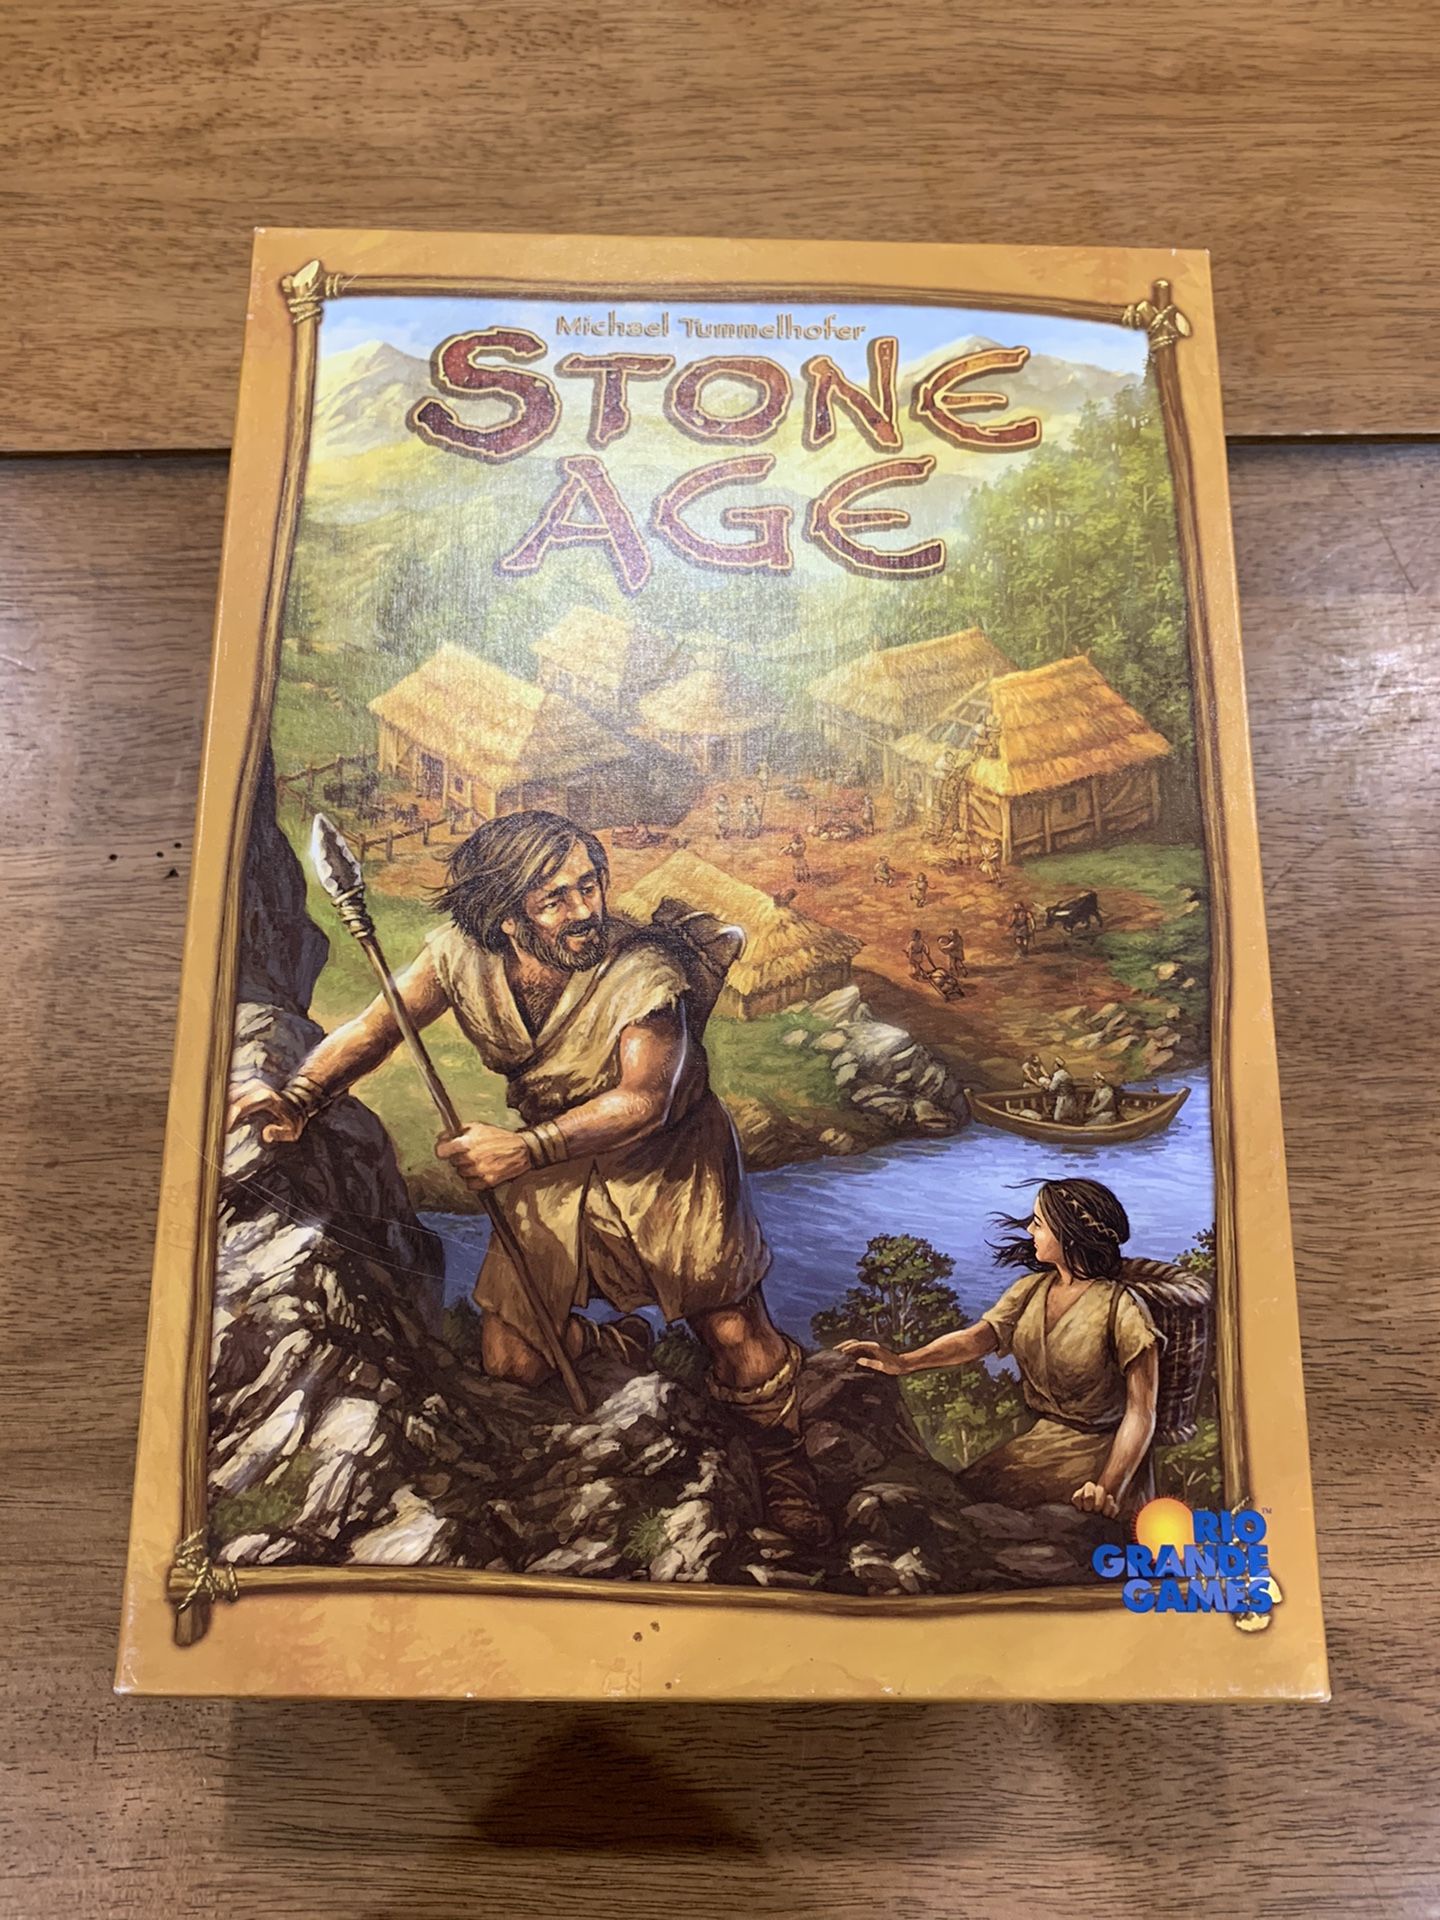 Stone Age Board Game by Rio Grande Games 2008 Michael Tummelhofer Complete